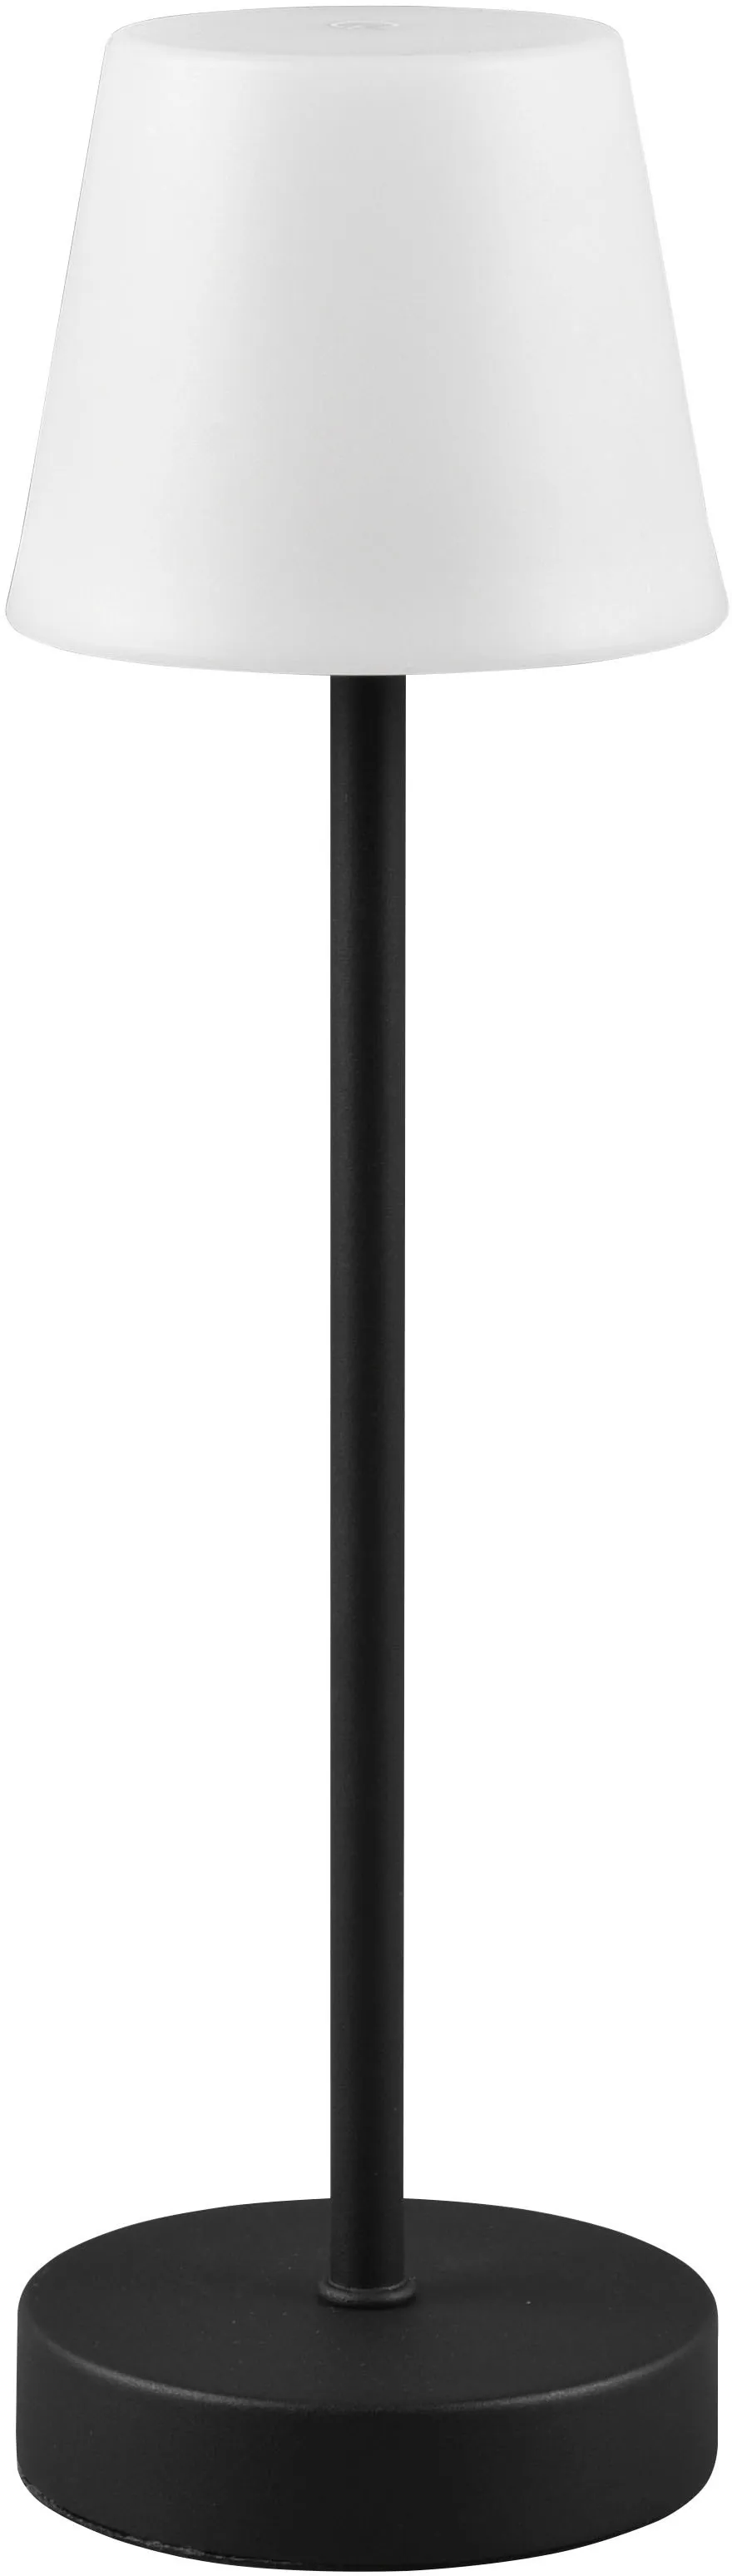 LED Außen-Tischleuchte TRIO LEUCHTEN "Martinez" Lampen Gr. Ø 11 cm Höhe: 39 cm, schwarz (schwarz matt) Gartentischleuchten Touch Tischlampe dimmbar Lichtfarbe einstellbar, Akku, USB-C Anschluss